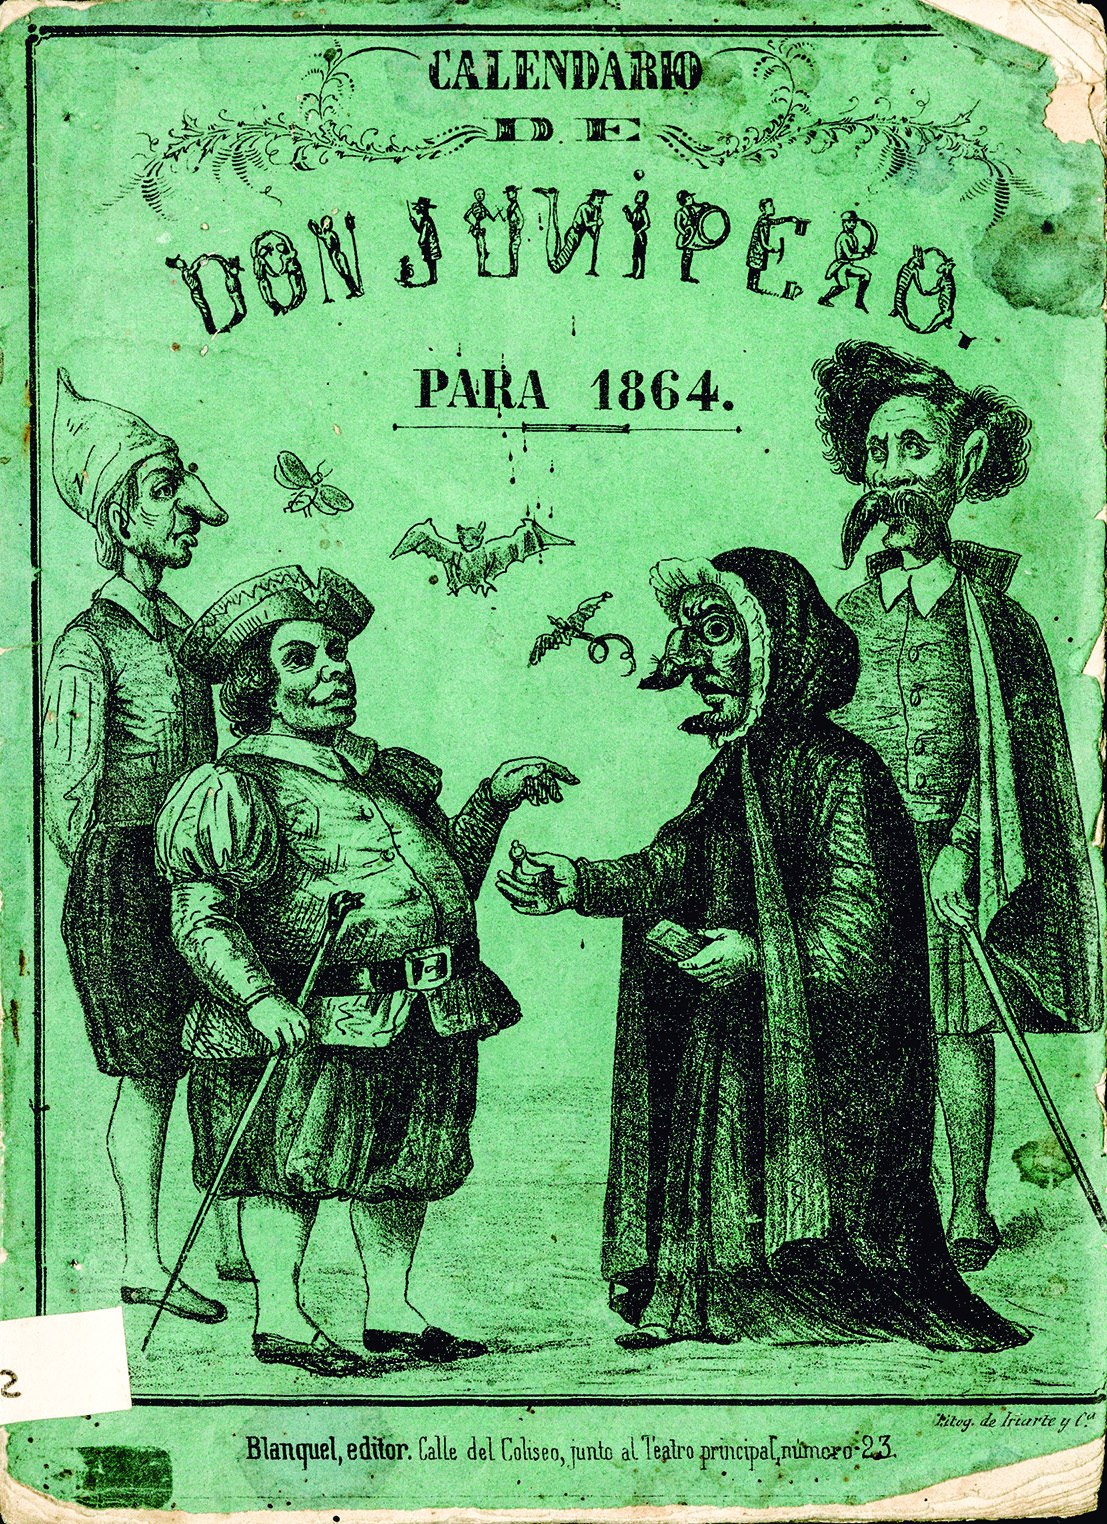 Calendario de don junípero para 1864.